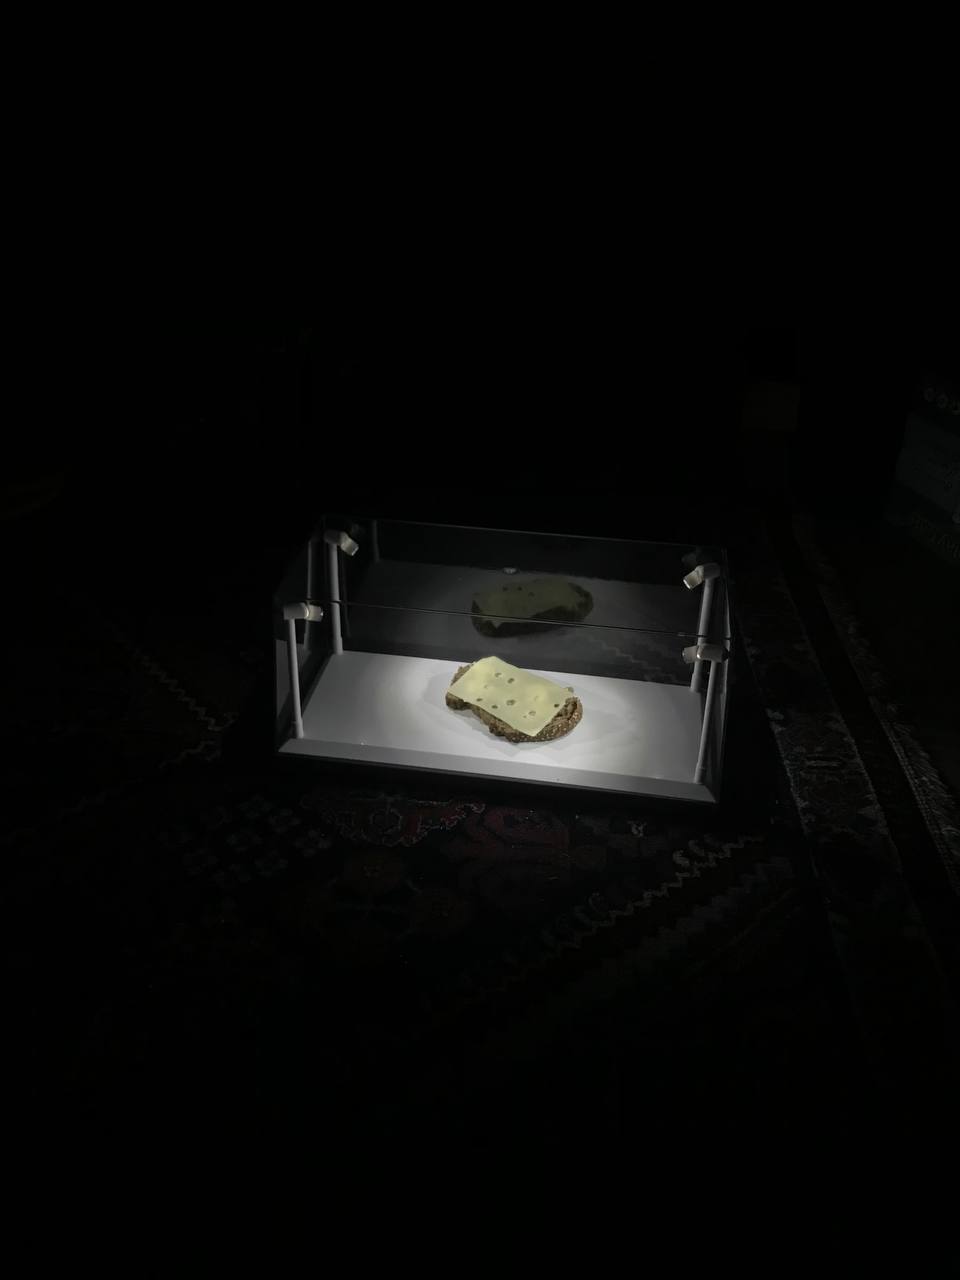 in einem schwarzen Raum steht eine gläserne von vier Lämpchen beleuchtete Box, in der sich ein Käsebrot befindet